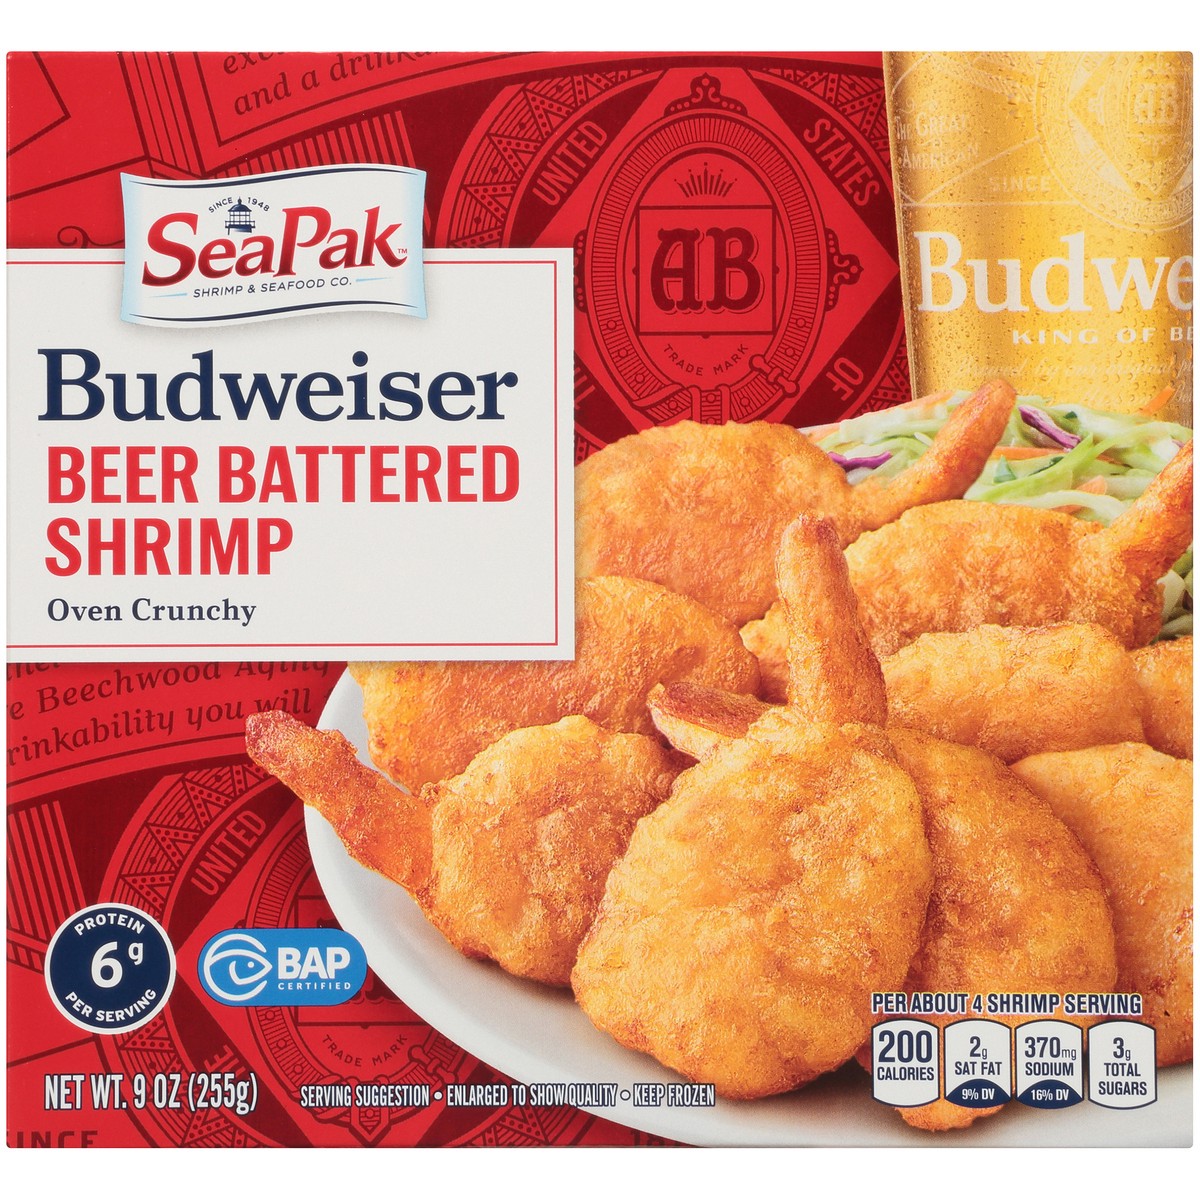 slide 10 of 14, SeaPak Shrimp & Seafood Co. Budweiser Oven Crunchy Beer Battered Shrimp 9 oz. Box, 9 oz